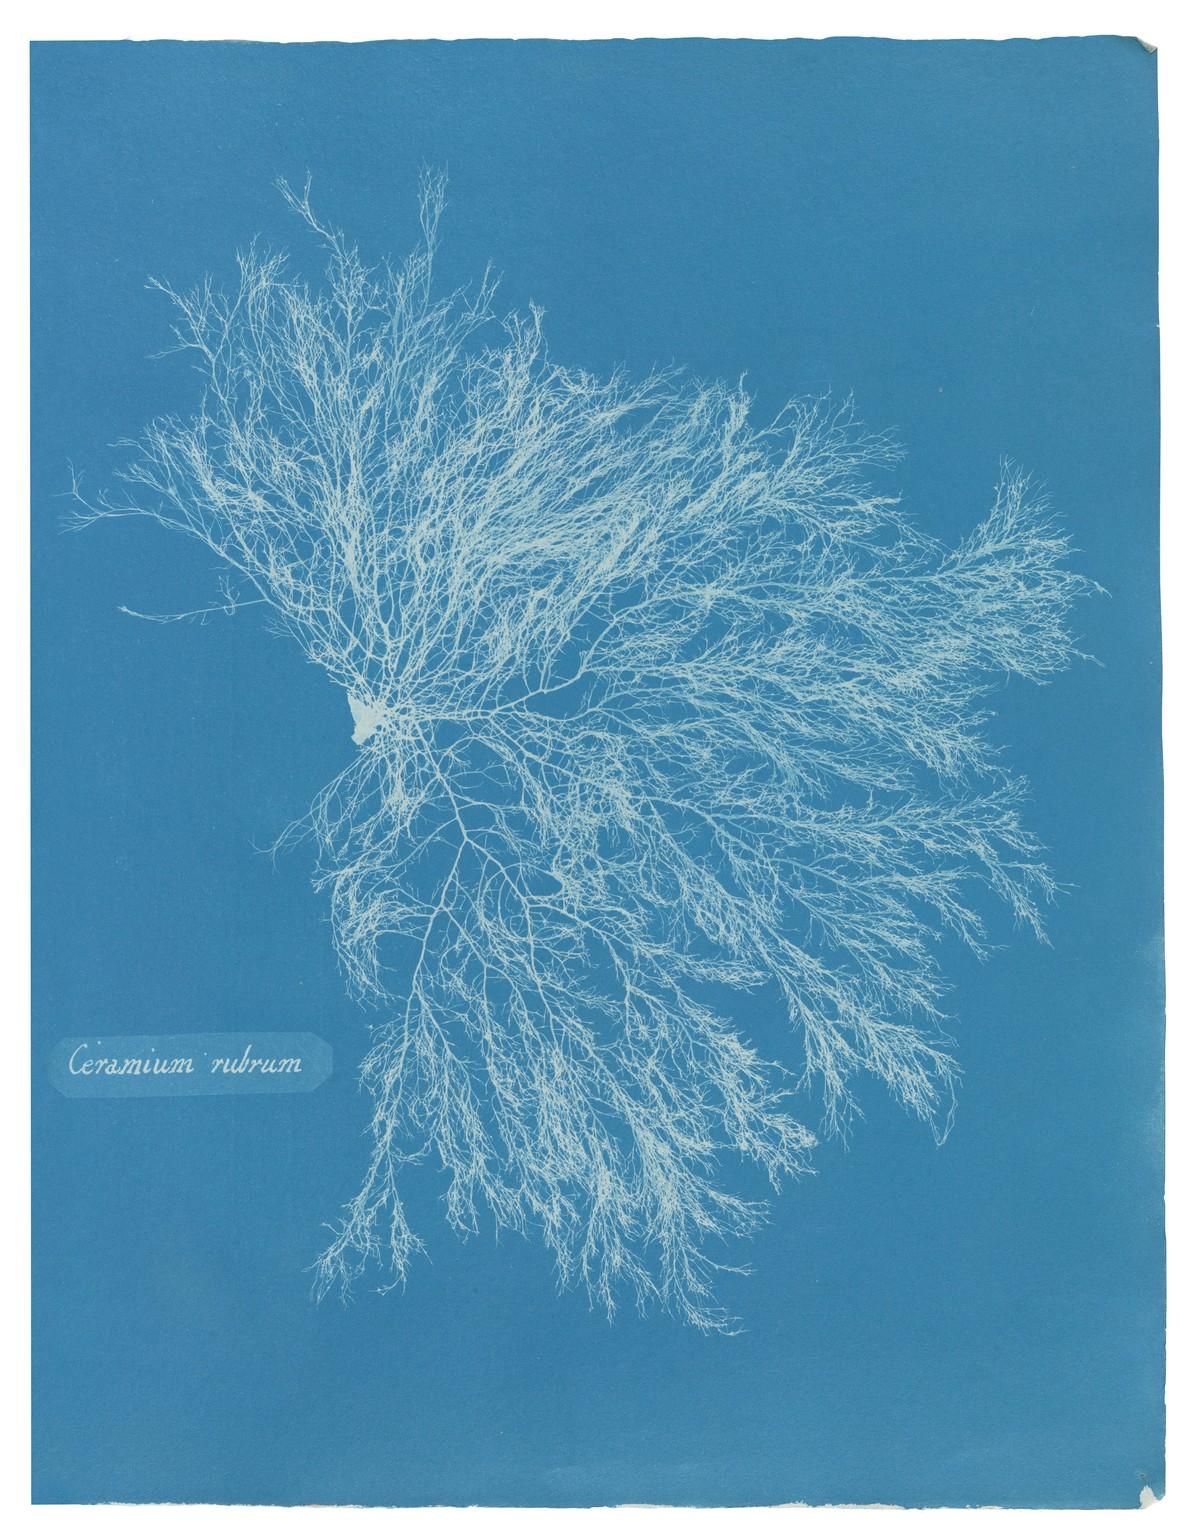 Die unnachahmlichen Cyanotypie-Fotogramme von Algen und Farnen, die Atkins anfertigte, bilden die ersten Bücher mit Fotografien. | Foto: TASCHEN / New York Public Library